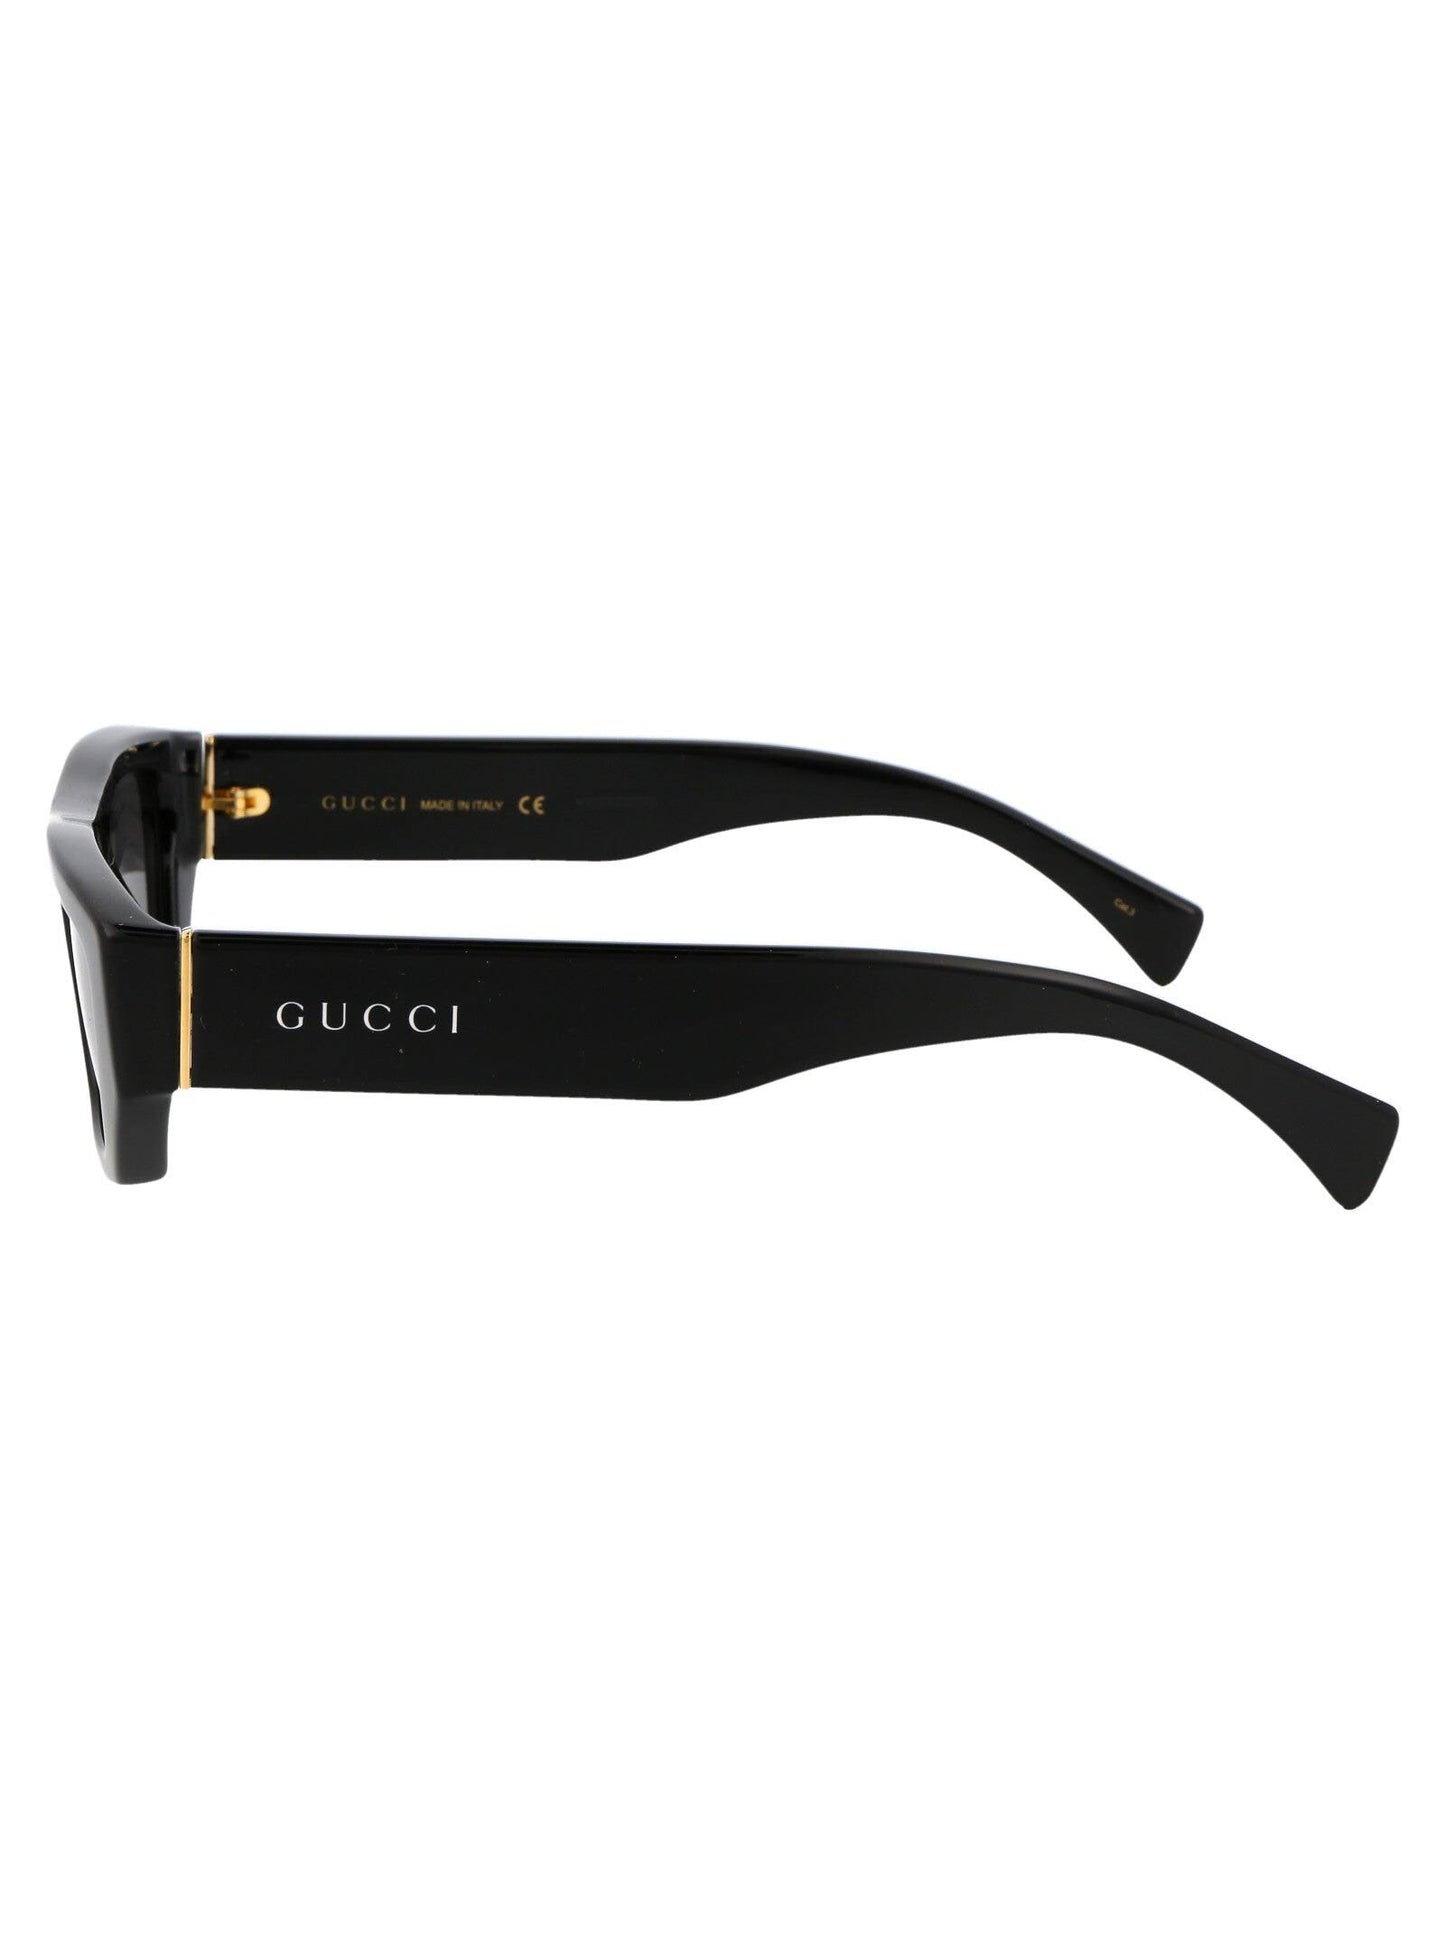 Gucci GG1134S-004 53mm New Sunglasses